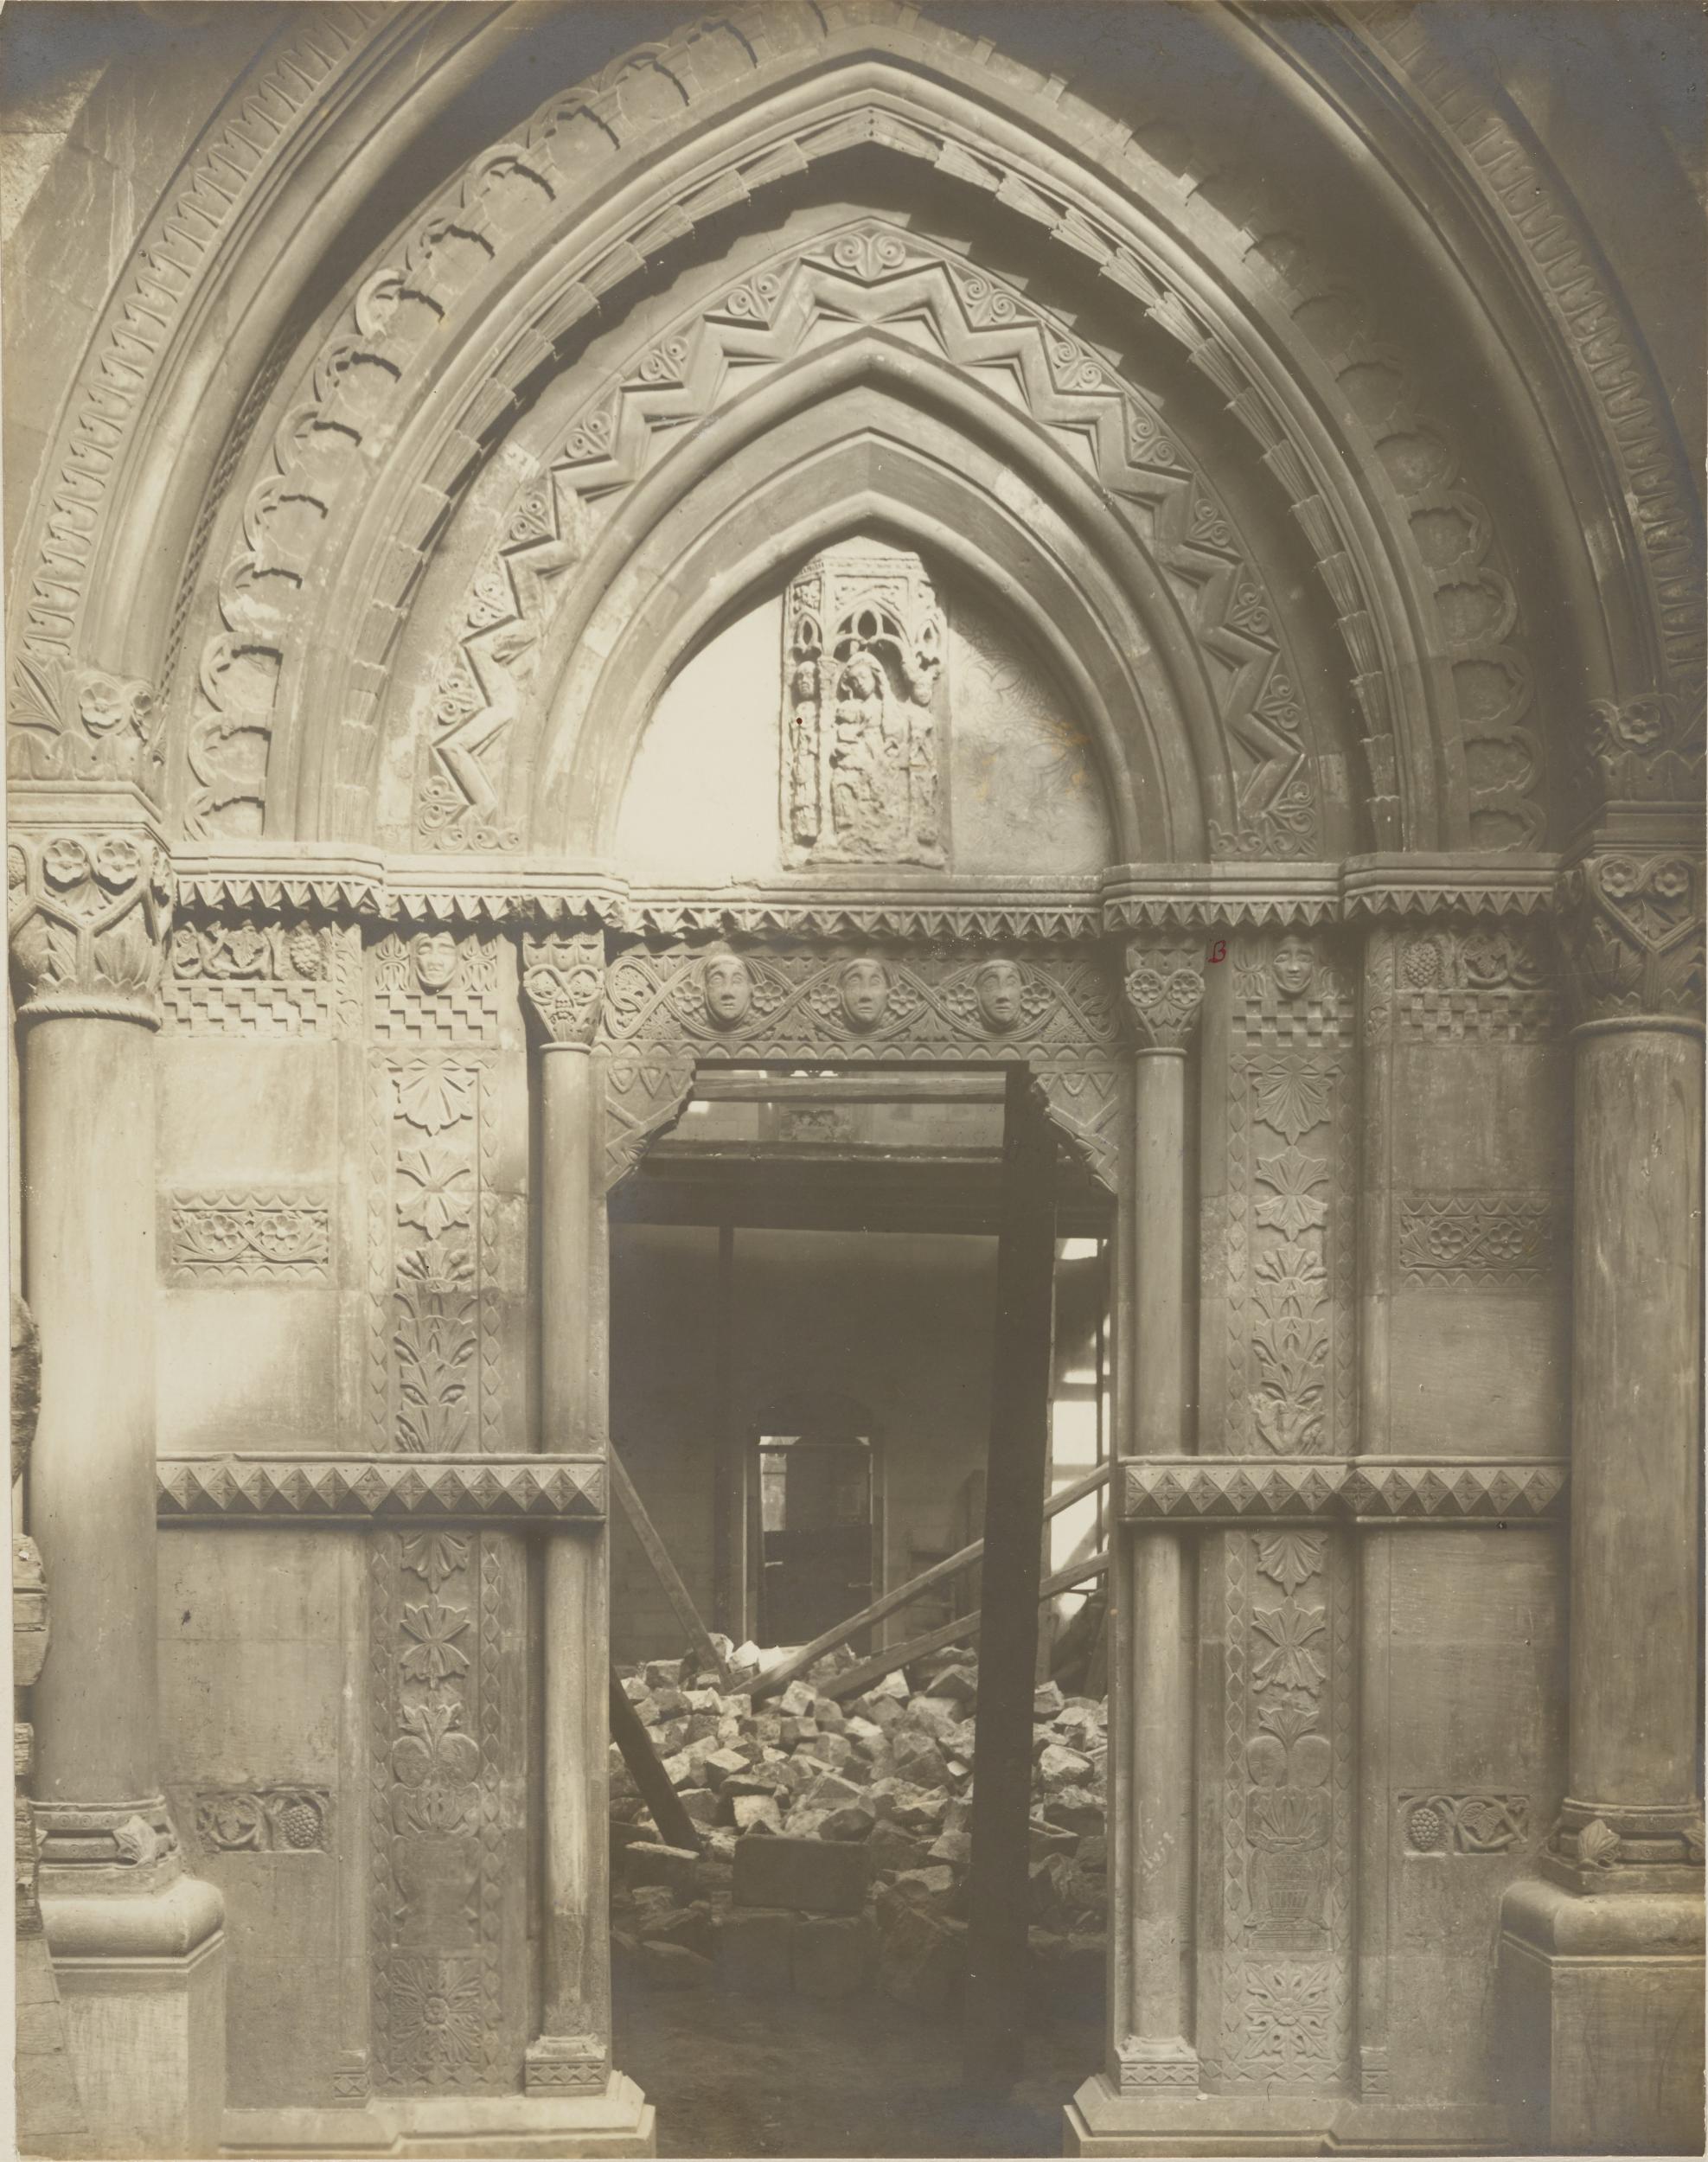 Fotografo non identificato, Conversano - Cattedrale, portale laterale, 1901-1925, gelatina ai sali d'argento/carta, MPI155331